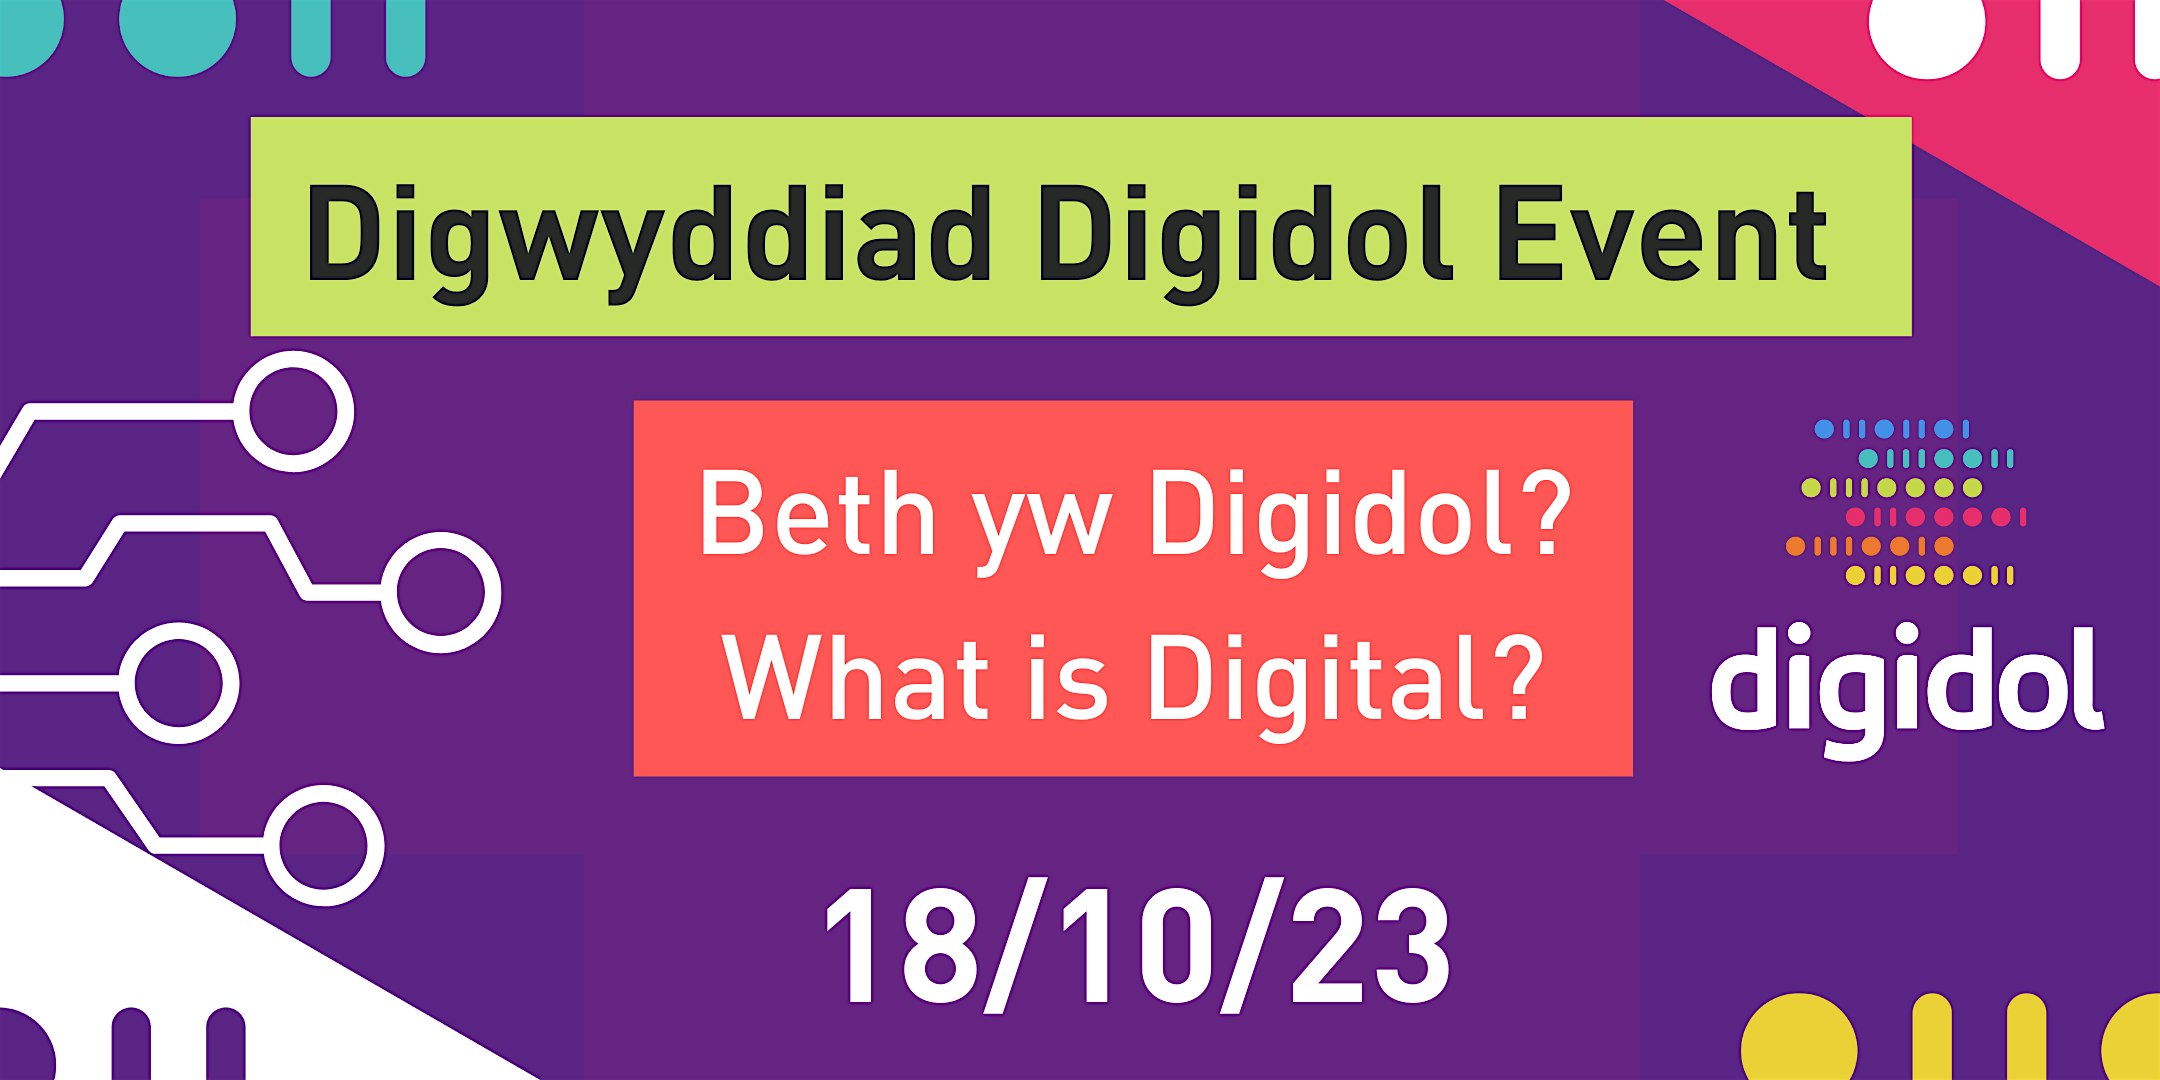 Beth yw digidol?  What is digital?